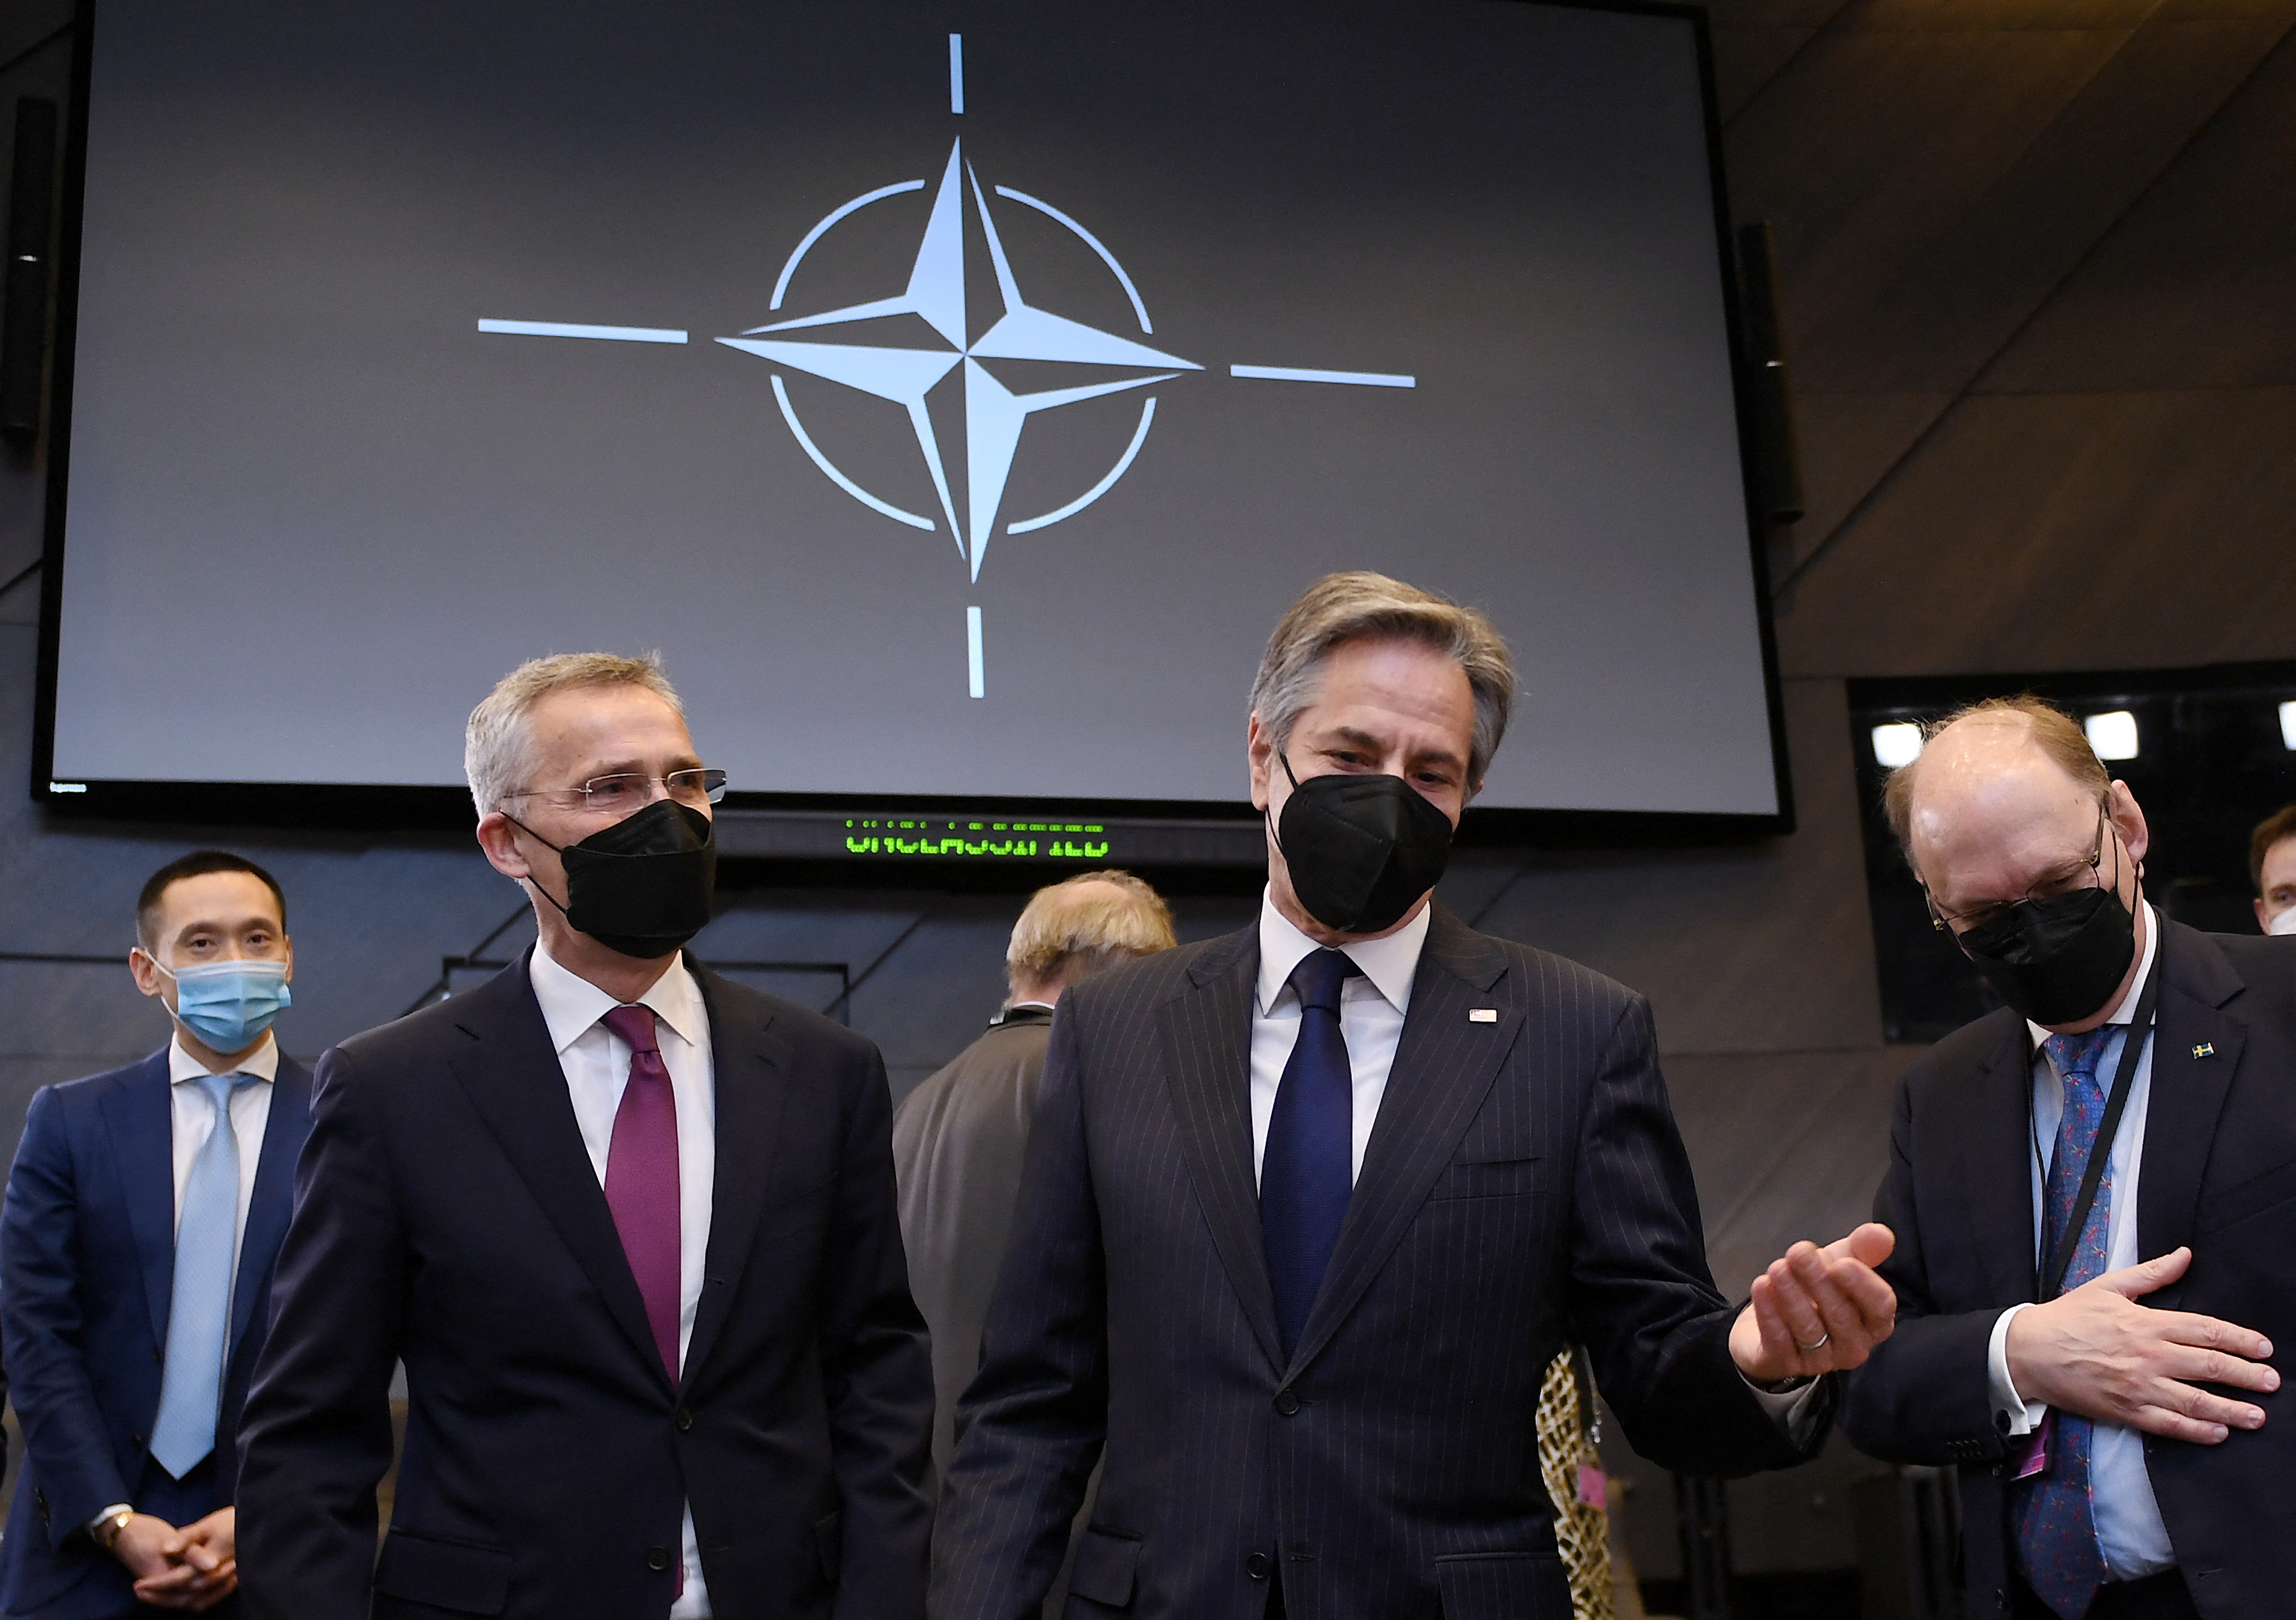 Il Segretario di Stato americano Antony Blinken e il Segretario generale della NATO Jens Stoltenberg presso la sede della NATO a Bruxelles, in Belgio, il 4 marzo 2022.